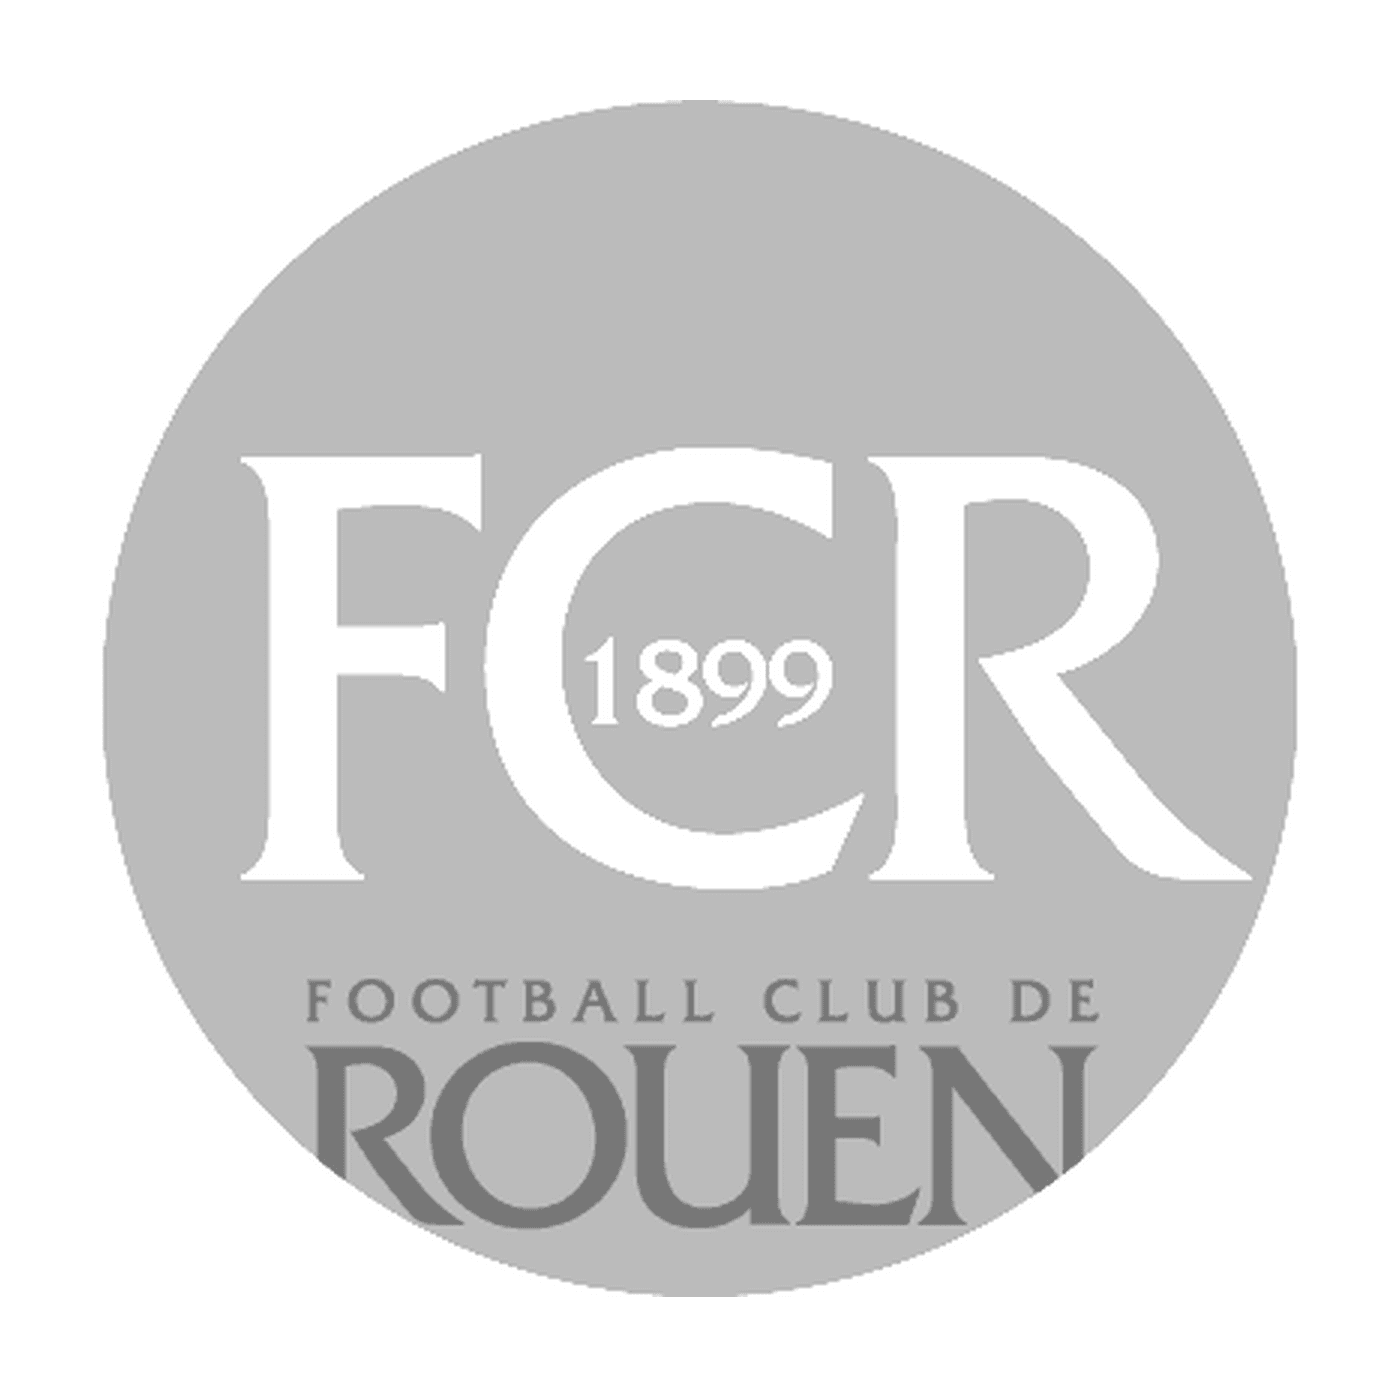  鲁昂足球俱乐部标志 